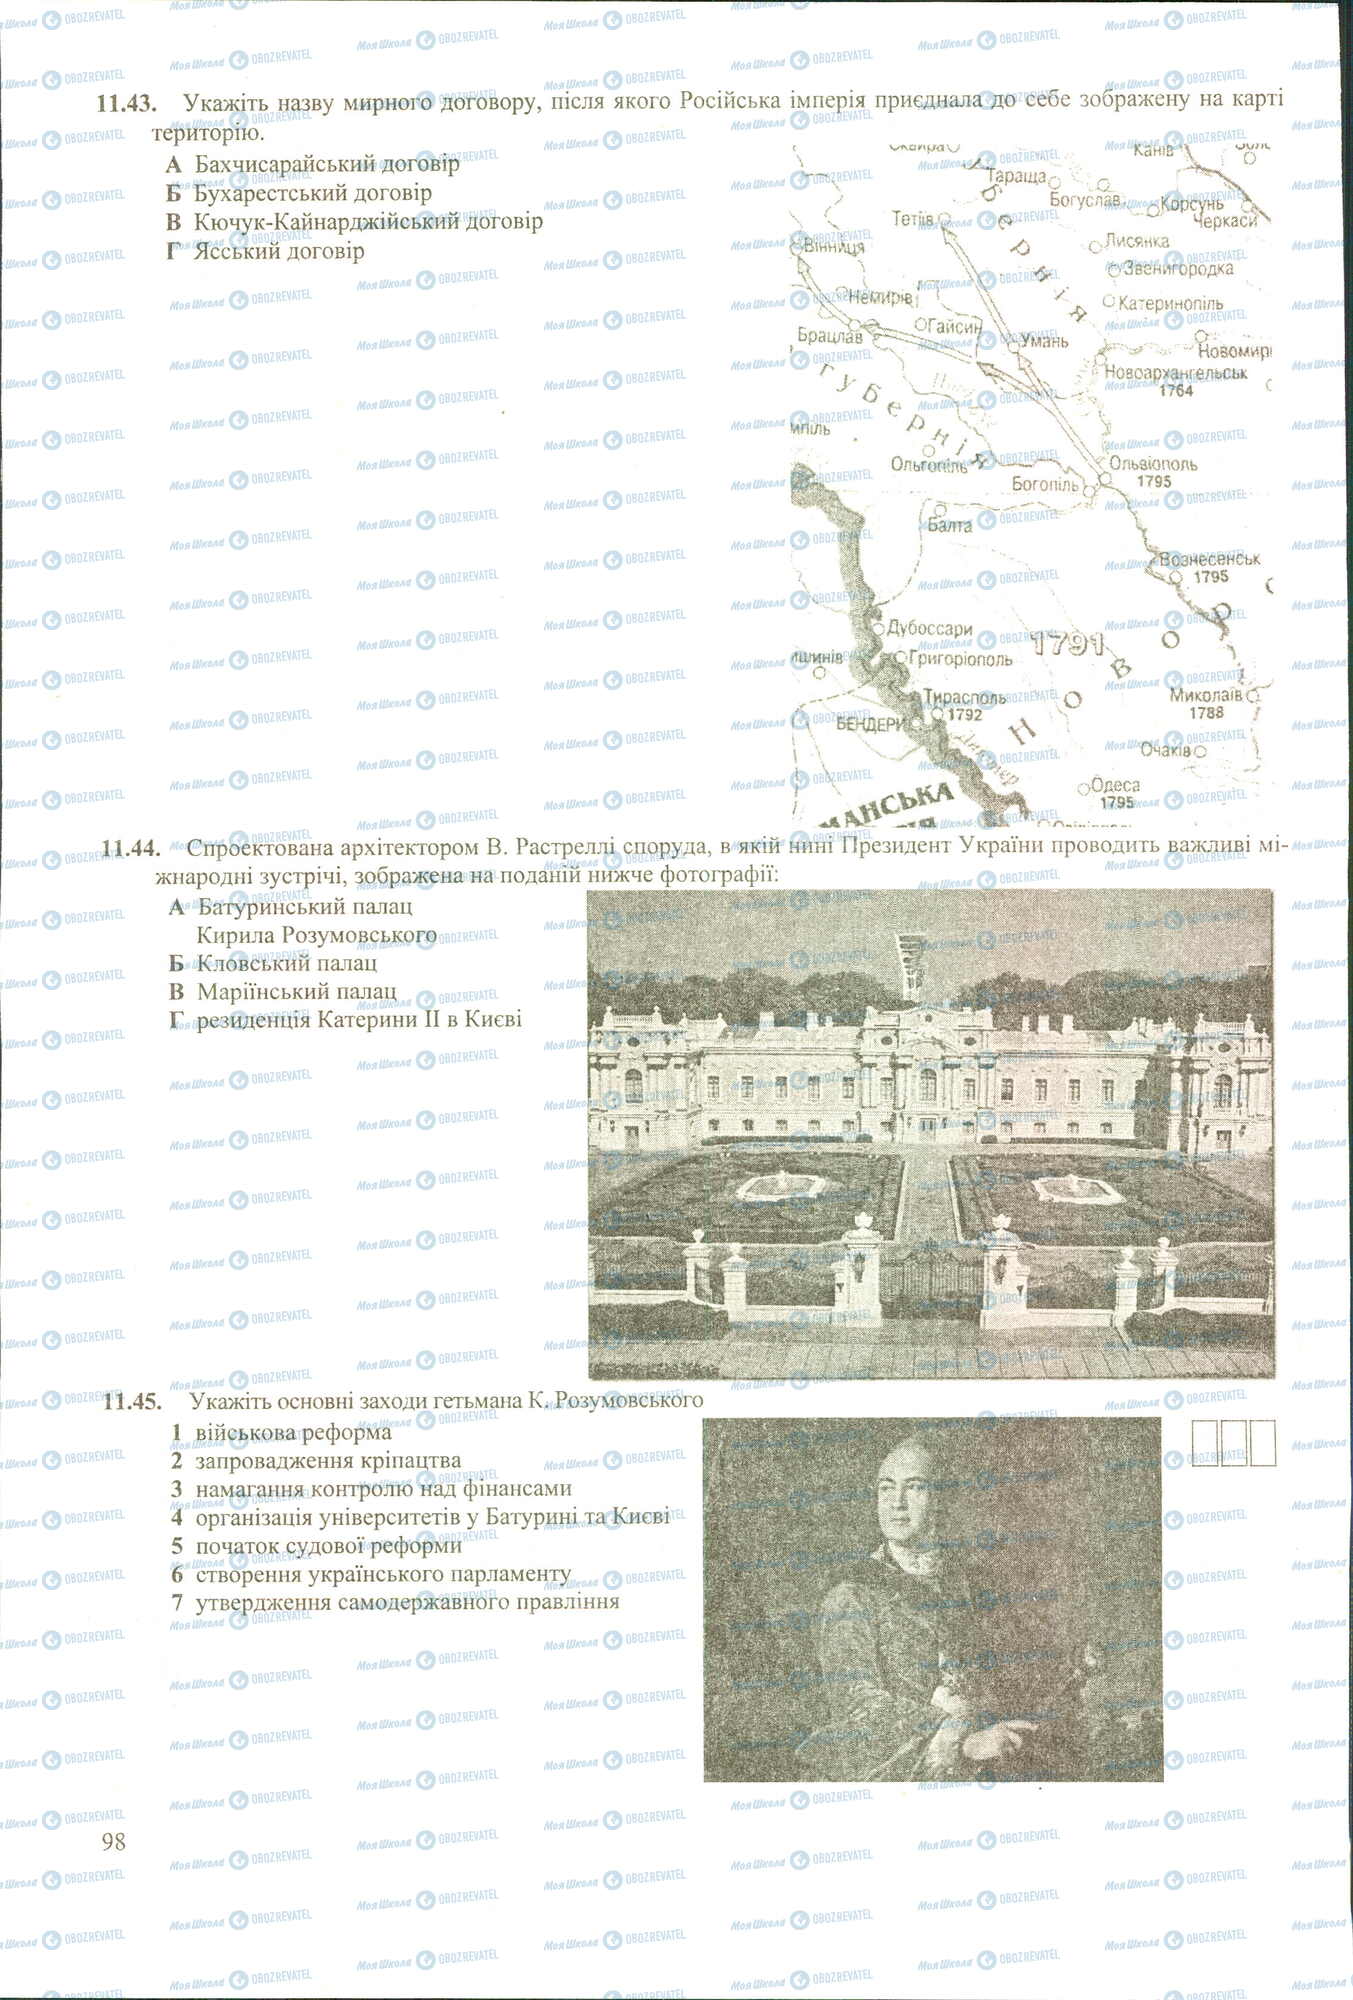 ЗНО История Украины 11 класс страница 43-45